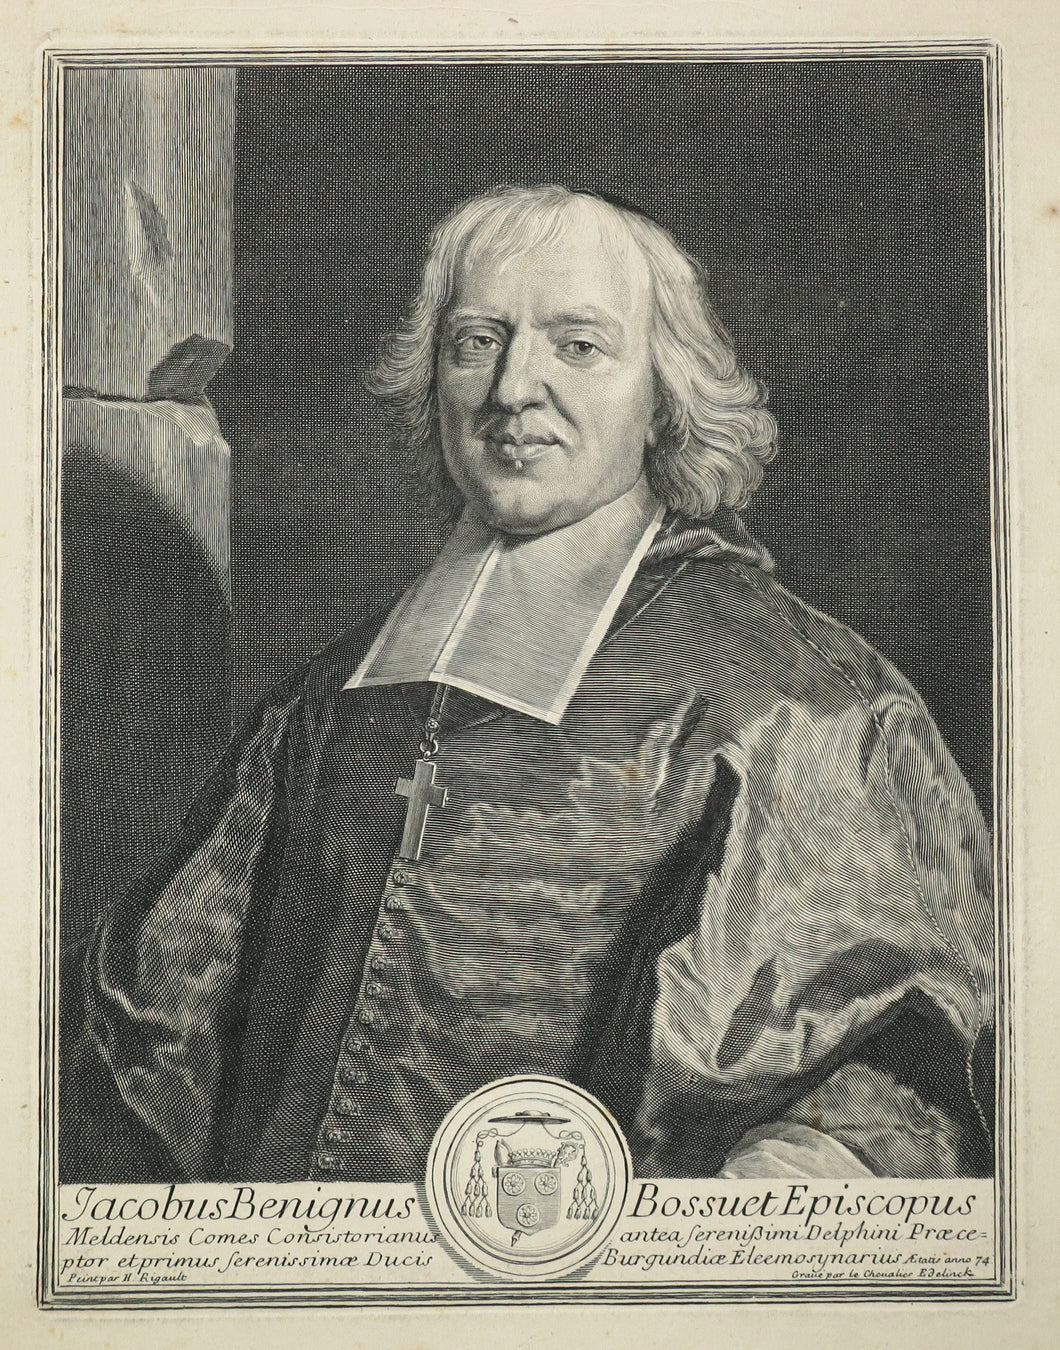 Portrait du théologien Jacques-Bénigne Bossuet (Dijon 1627 † 1704 Paris), Evêque de Meaux. 1701.